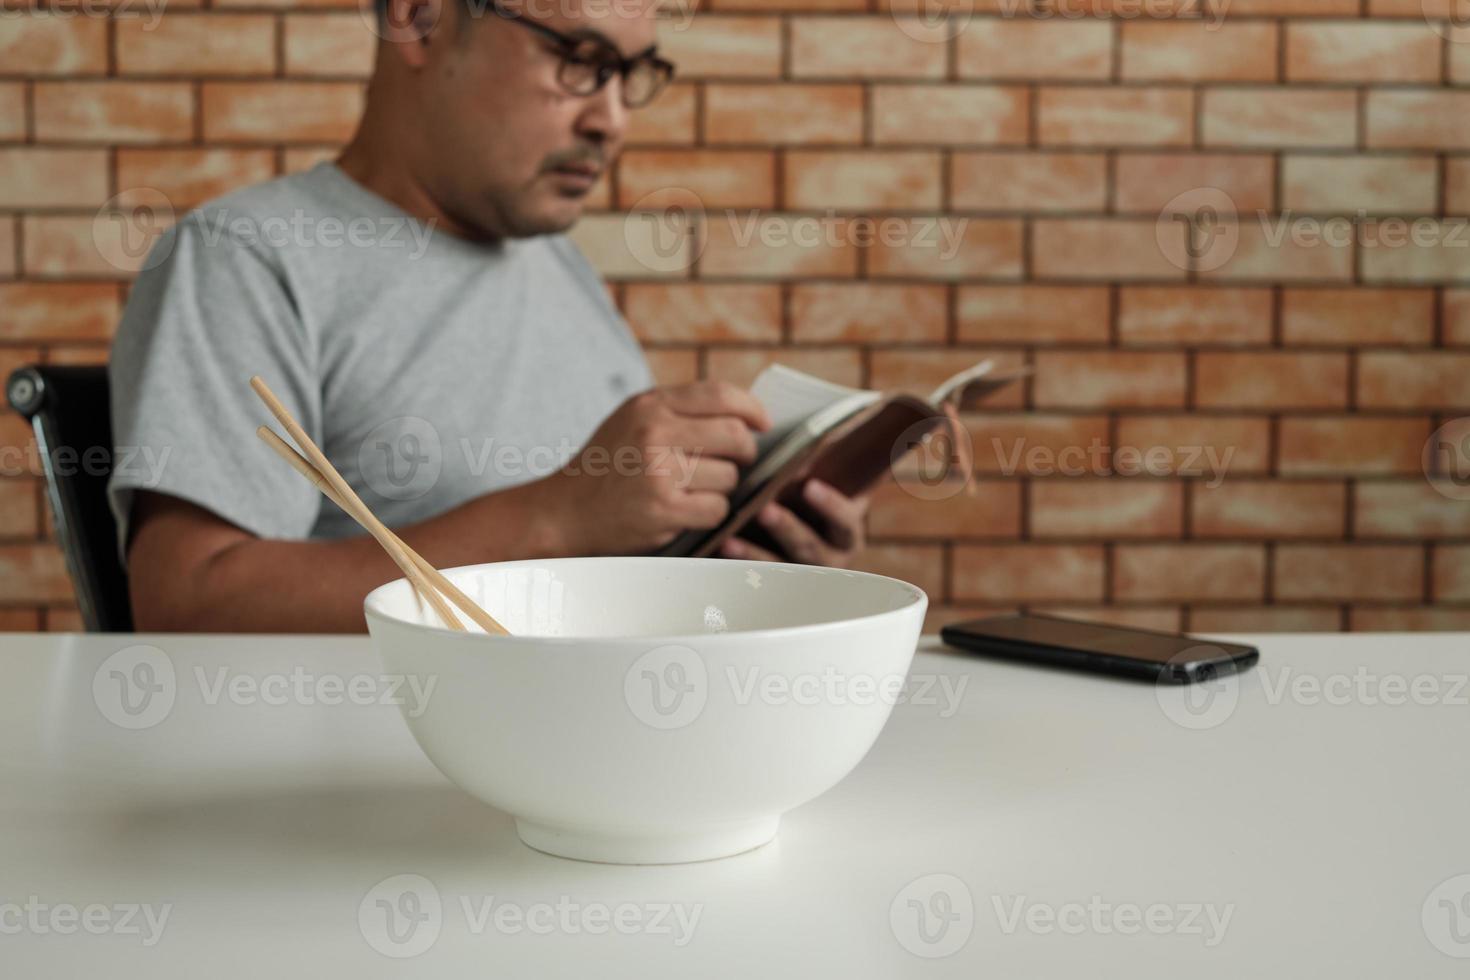 trabalhador do sexo masculino asiático lê uma agenda enquanto come macarrão instantâneo em uma tigela branca com pauzinhos na mesa no escritório de fundo de parede de tijolos durante uma pausa para o almoço, um estilo de vida rapidamente pouco saudável. foto